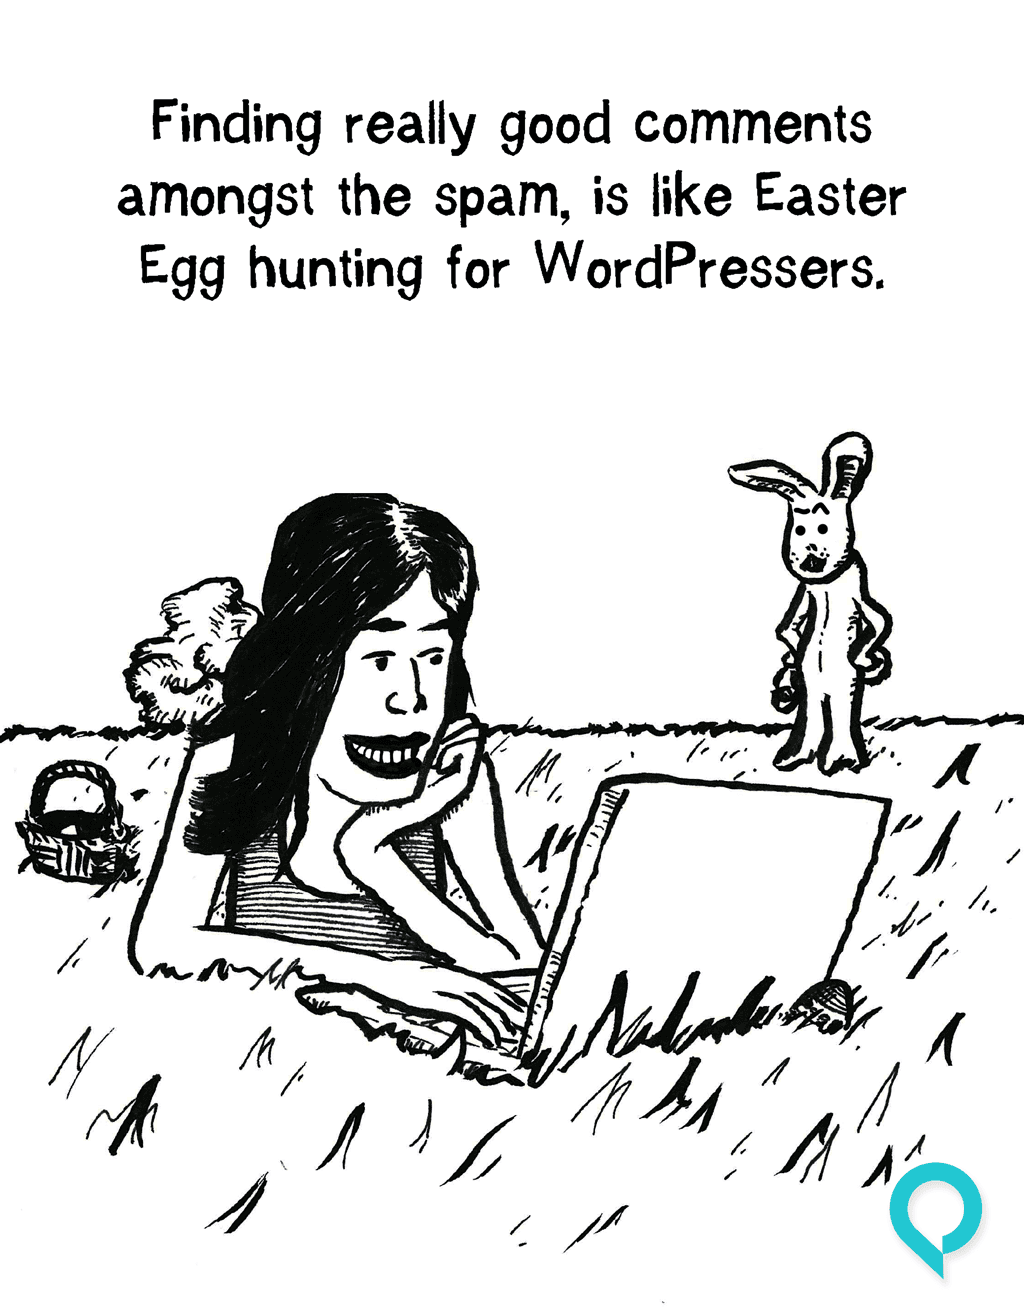 Easter Egg hunts for WordPressers